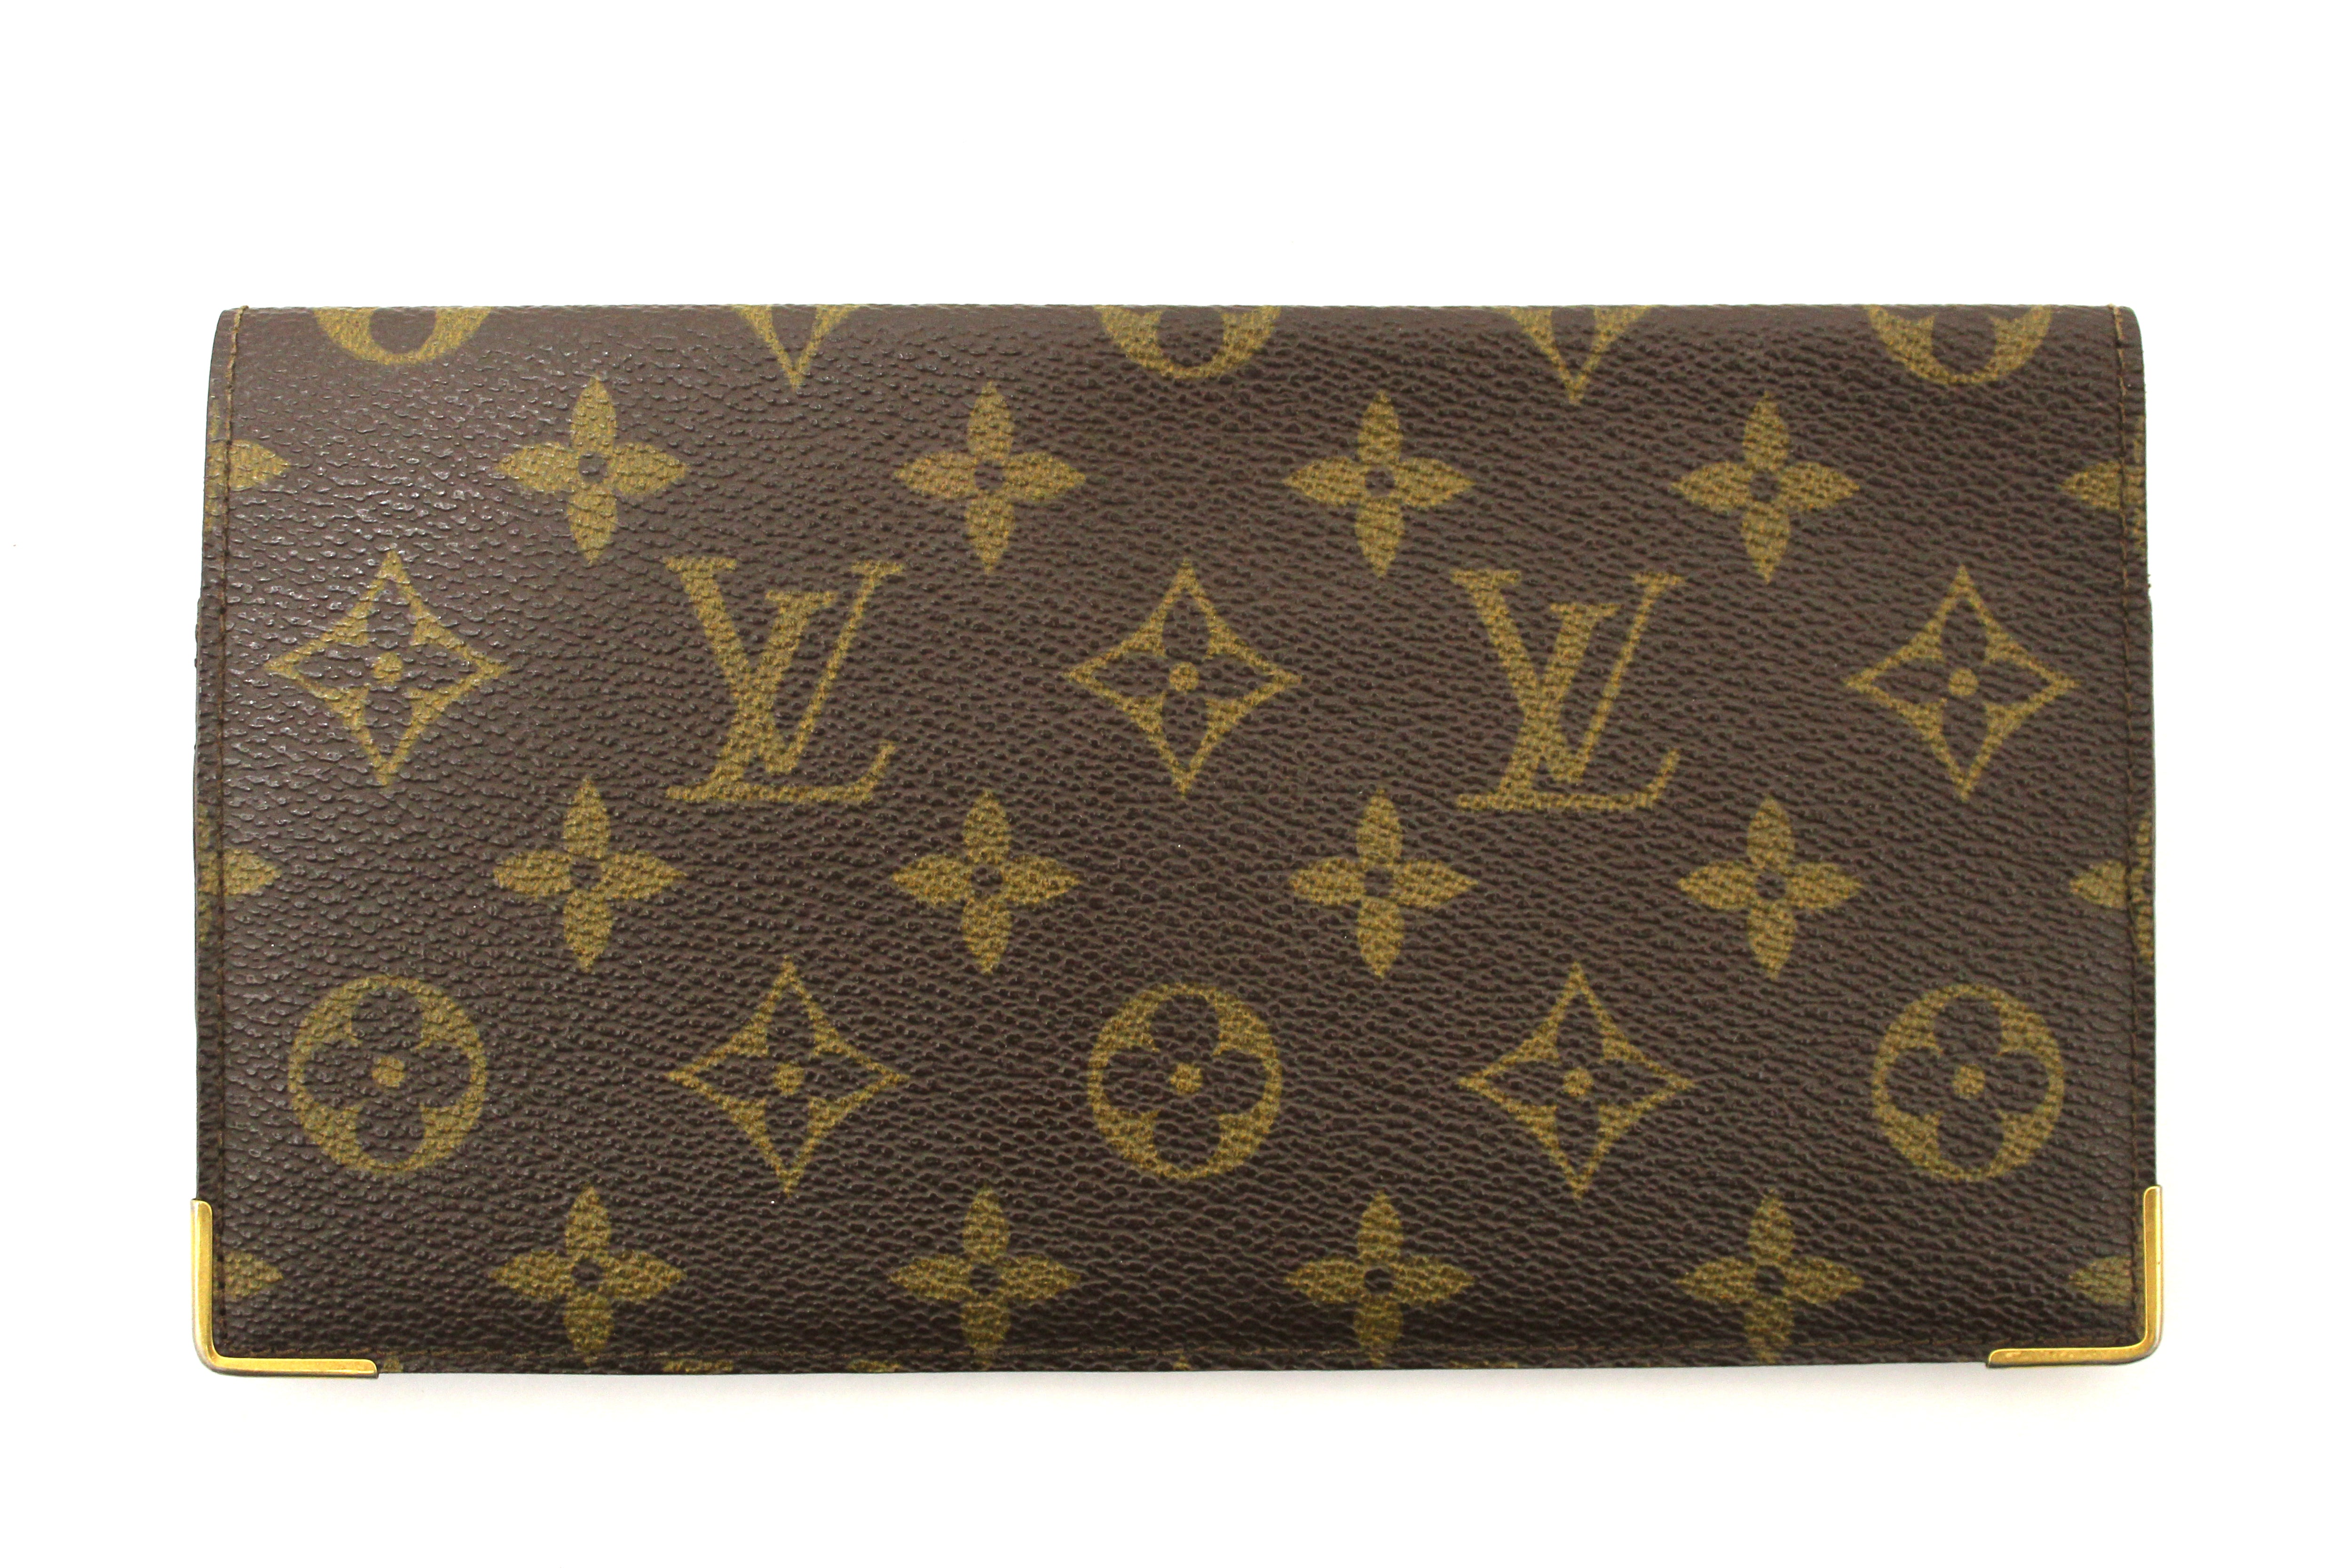 Authentic Louis Vuitton Classic Monogram Checkbook Holder